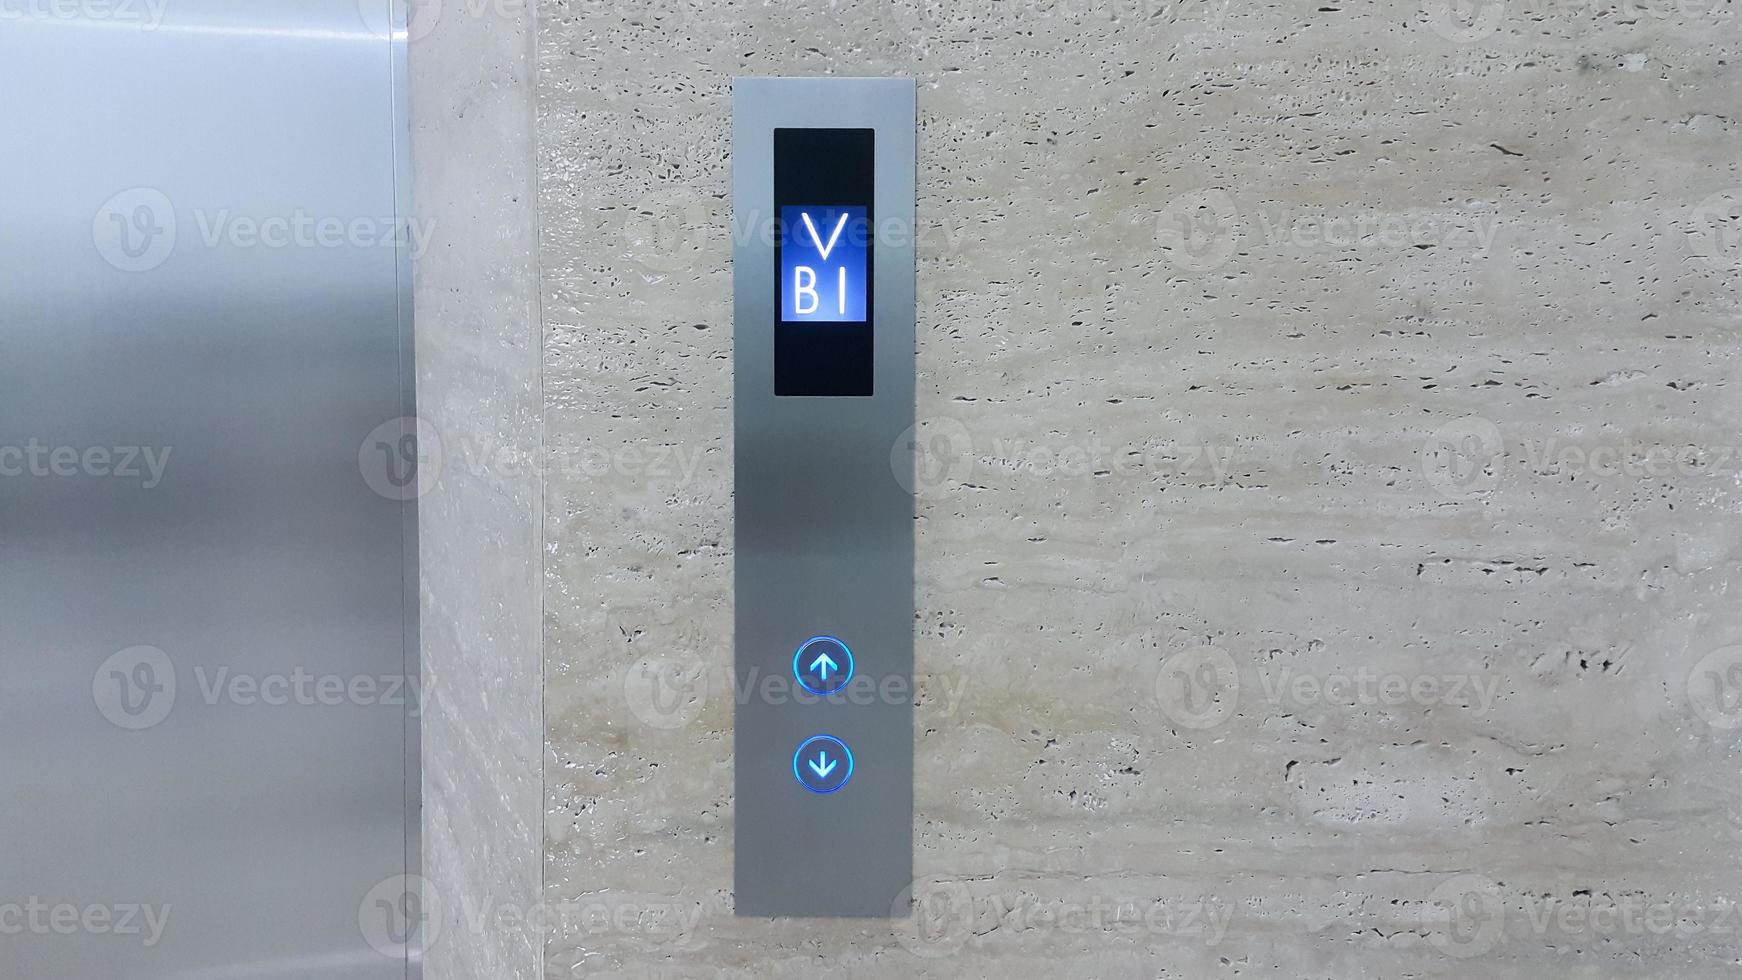 botón de ascensor arriba y abajo con pantalla indicando el piso b1 foto